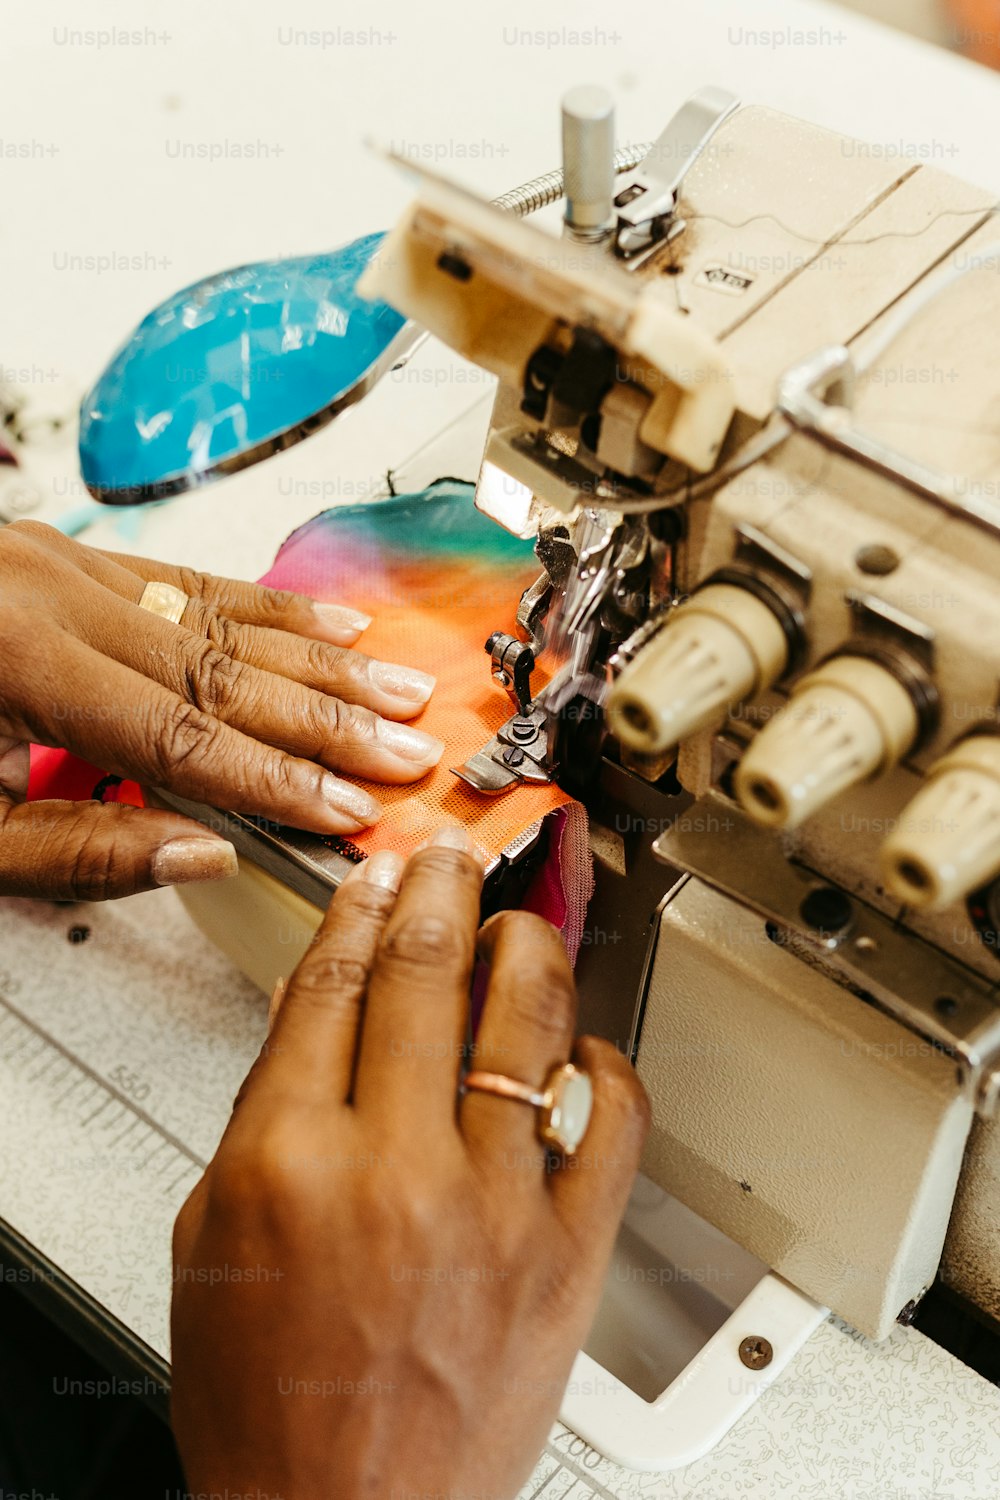 uma mulher está usando uma máquina de costura para costurar um pedaço de tecido